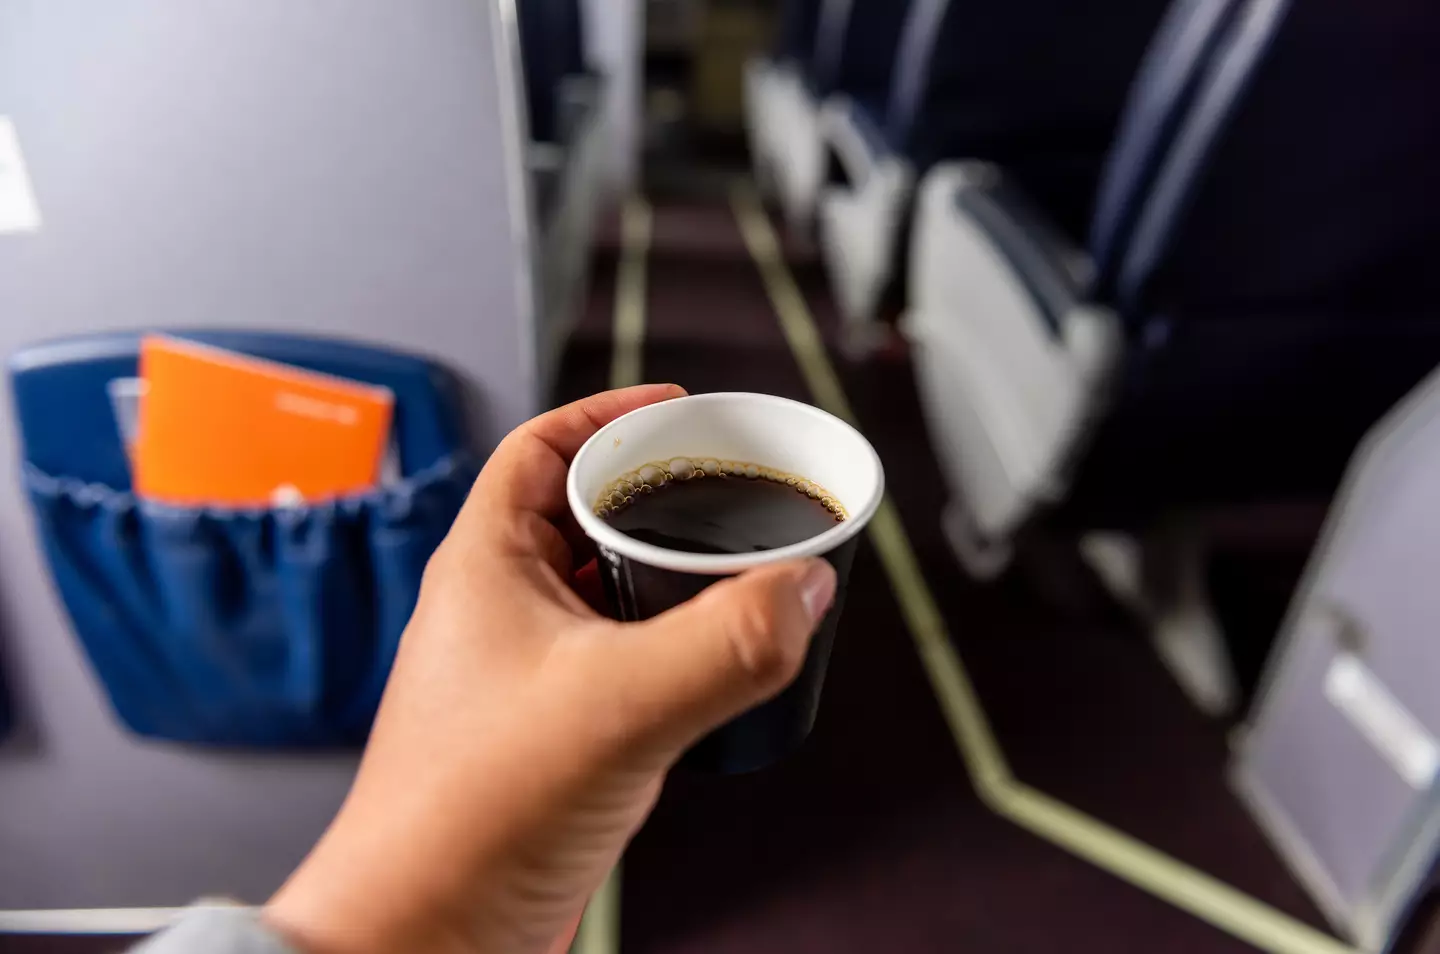 Several flight attendants advice NOT drinking hot drinks on flights. (Gerardo Huitrón/Getty)